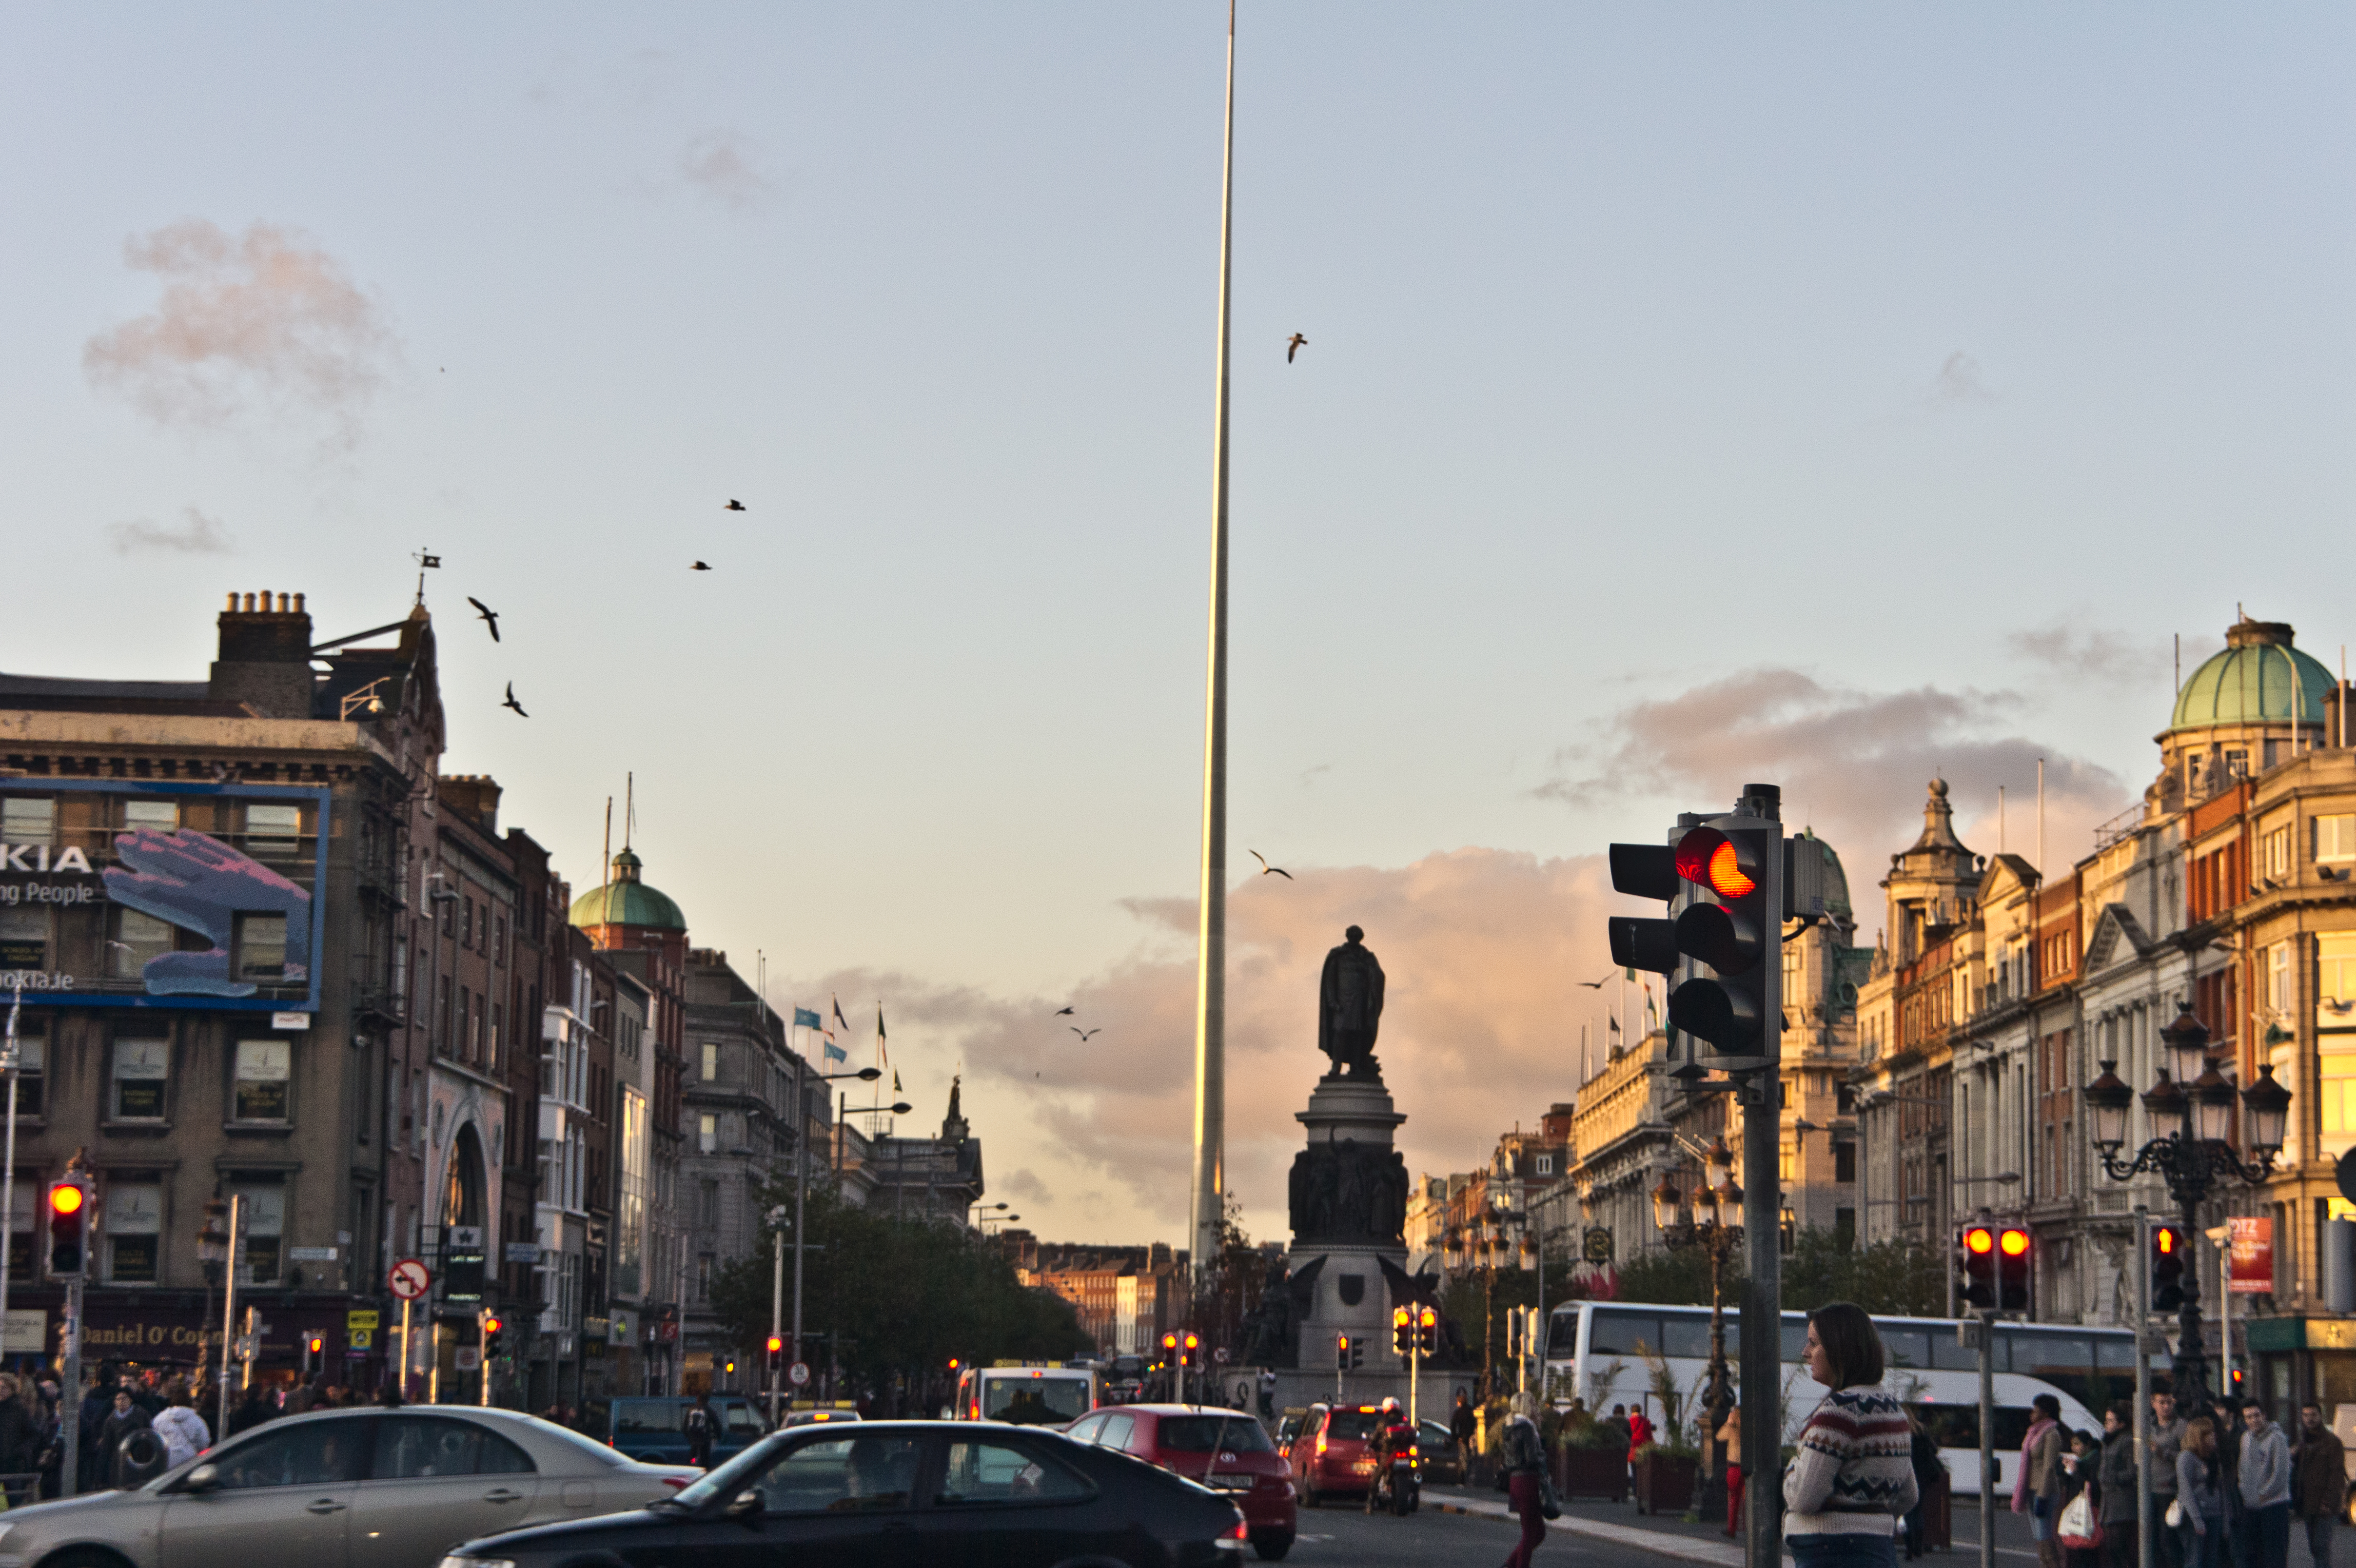 Aguja de Dublín Monumento